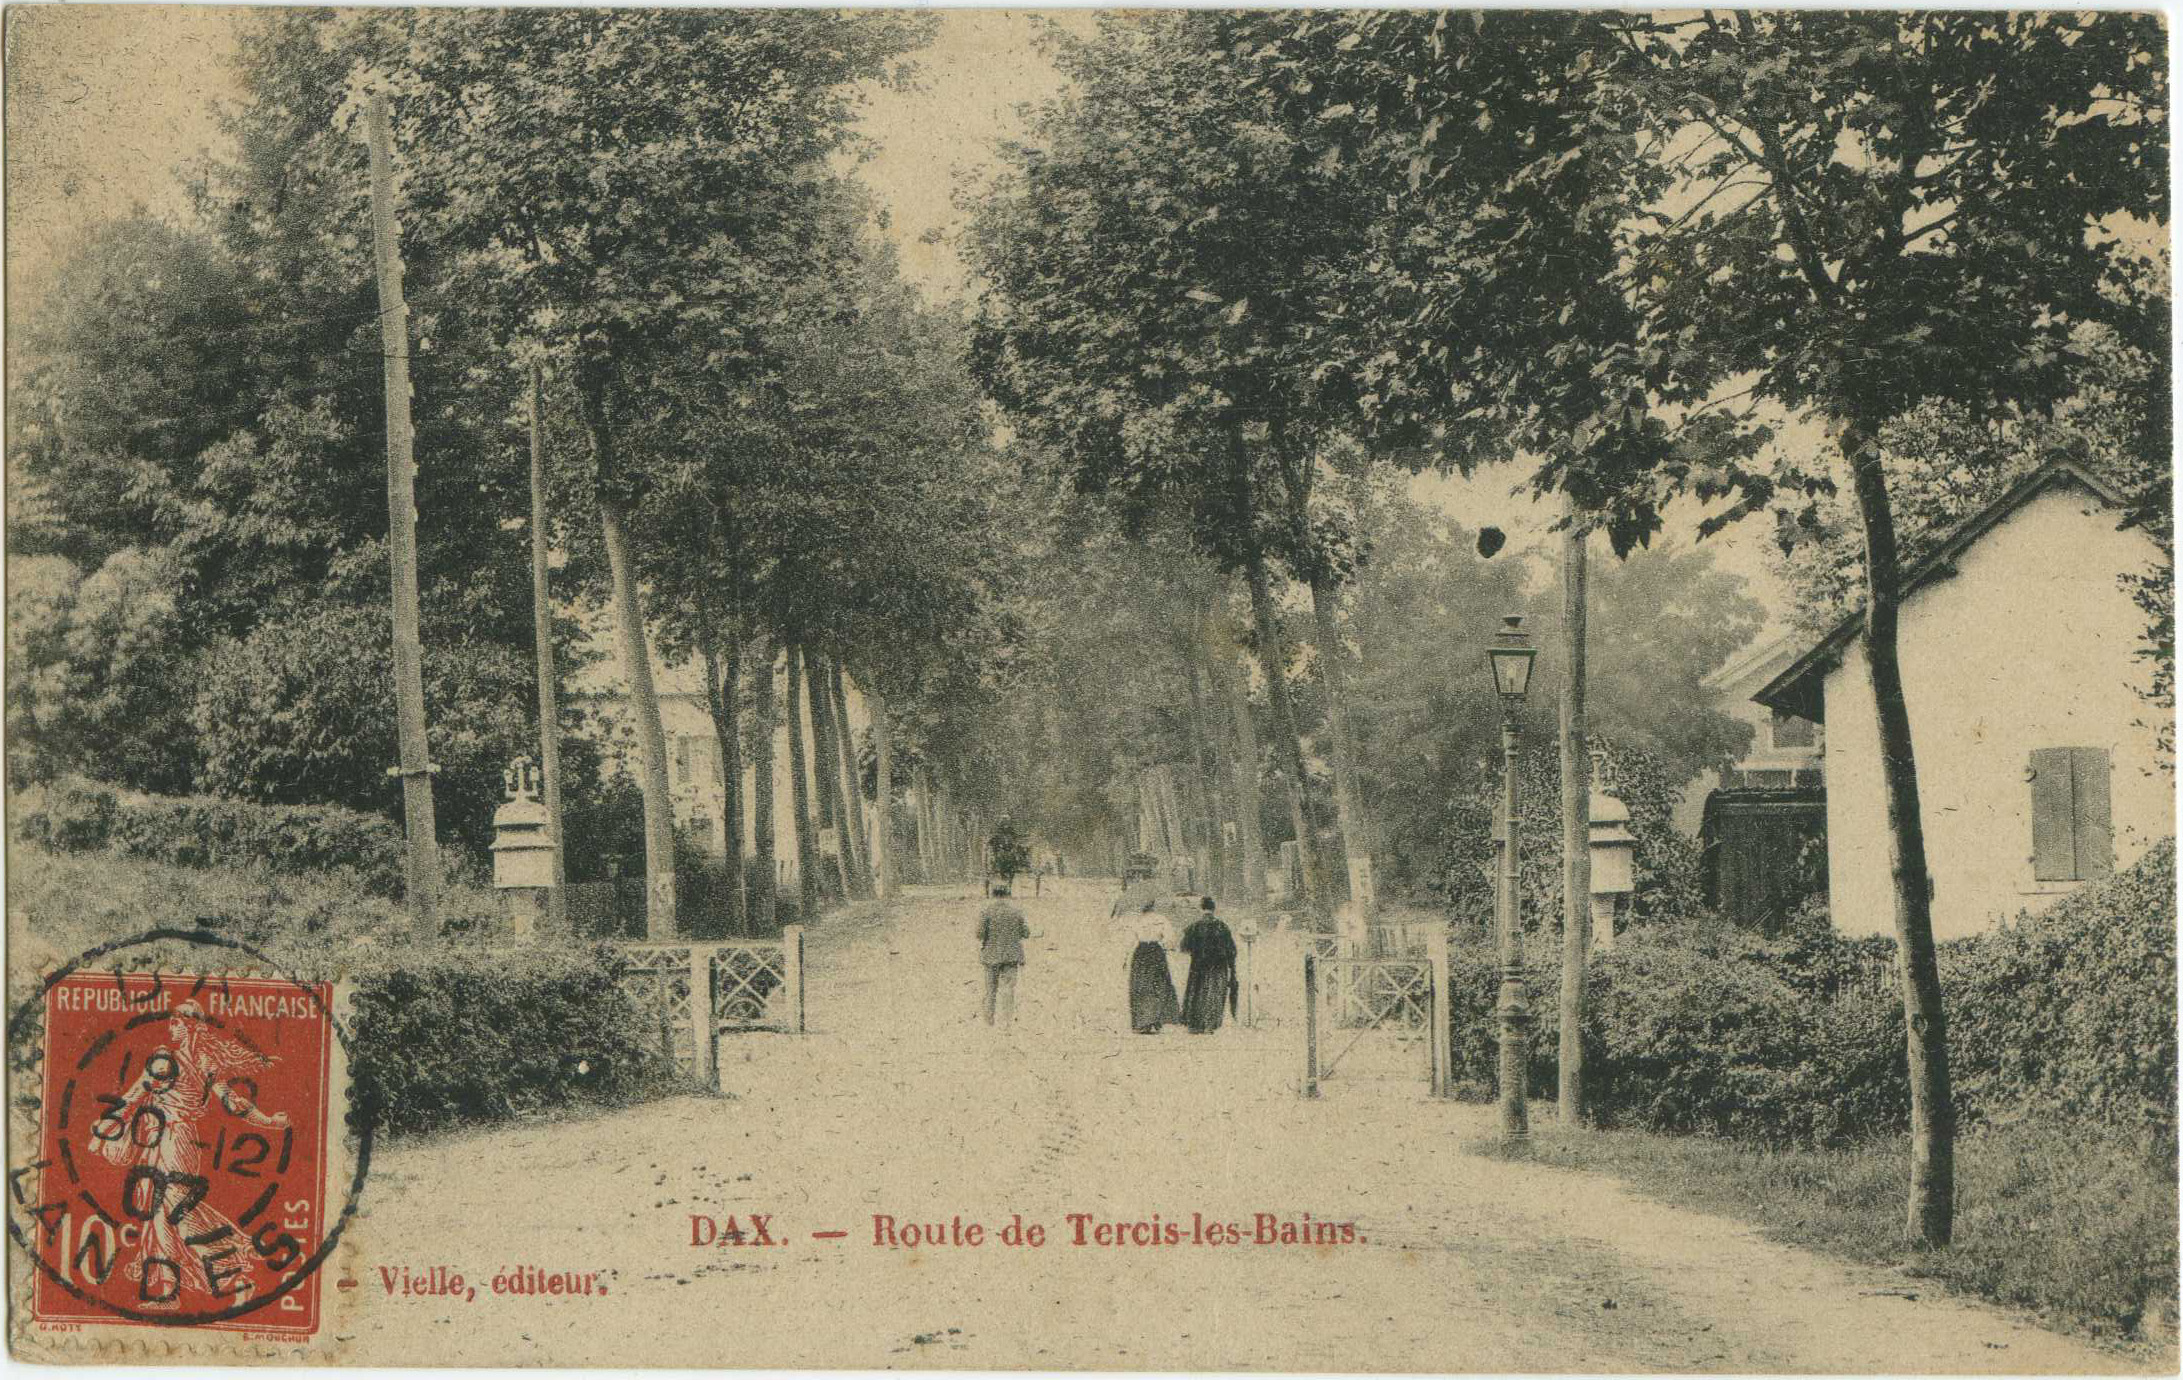 Dax - Route de Tercis-les-Bains.